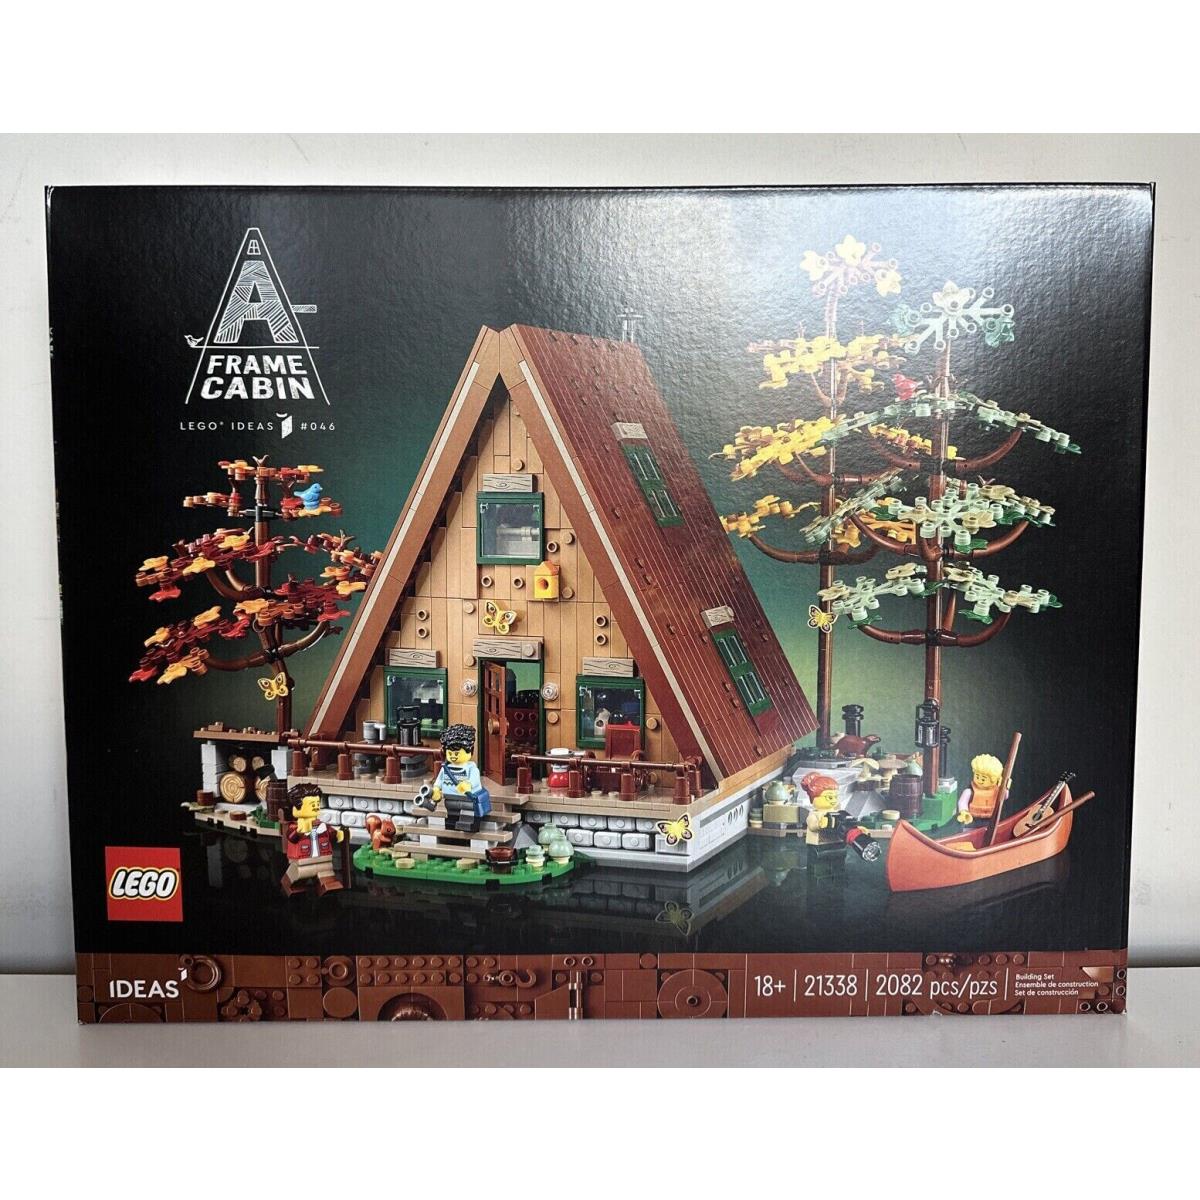 Lego Ideas A-frame Cabin 21338 Building Kit